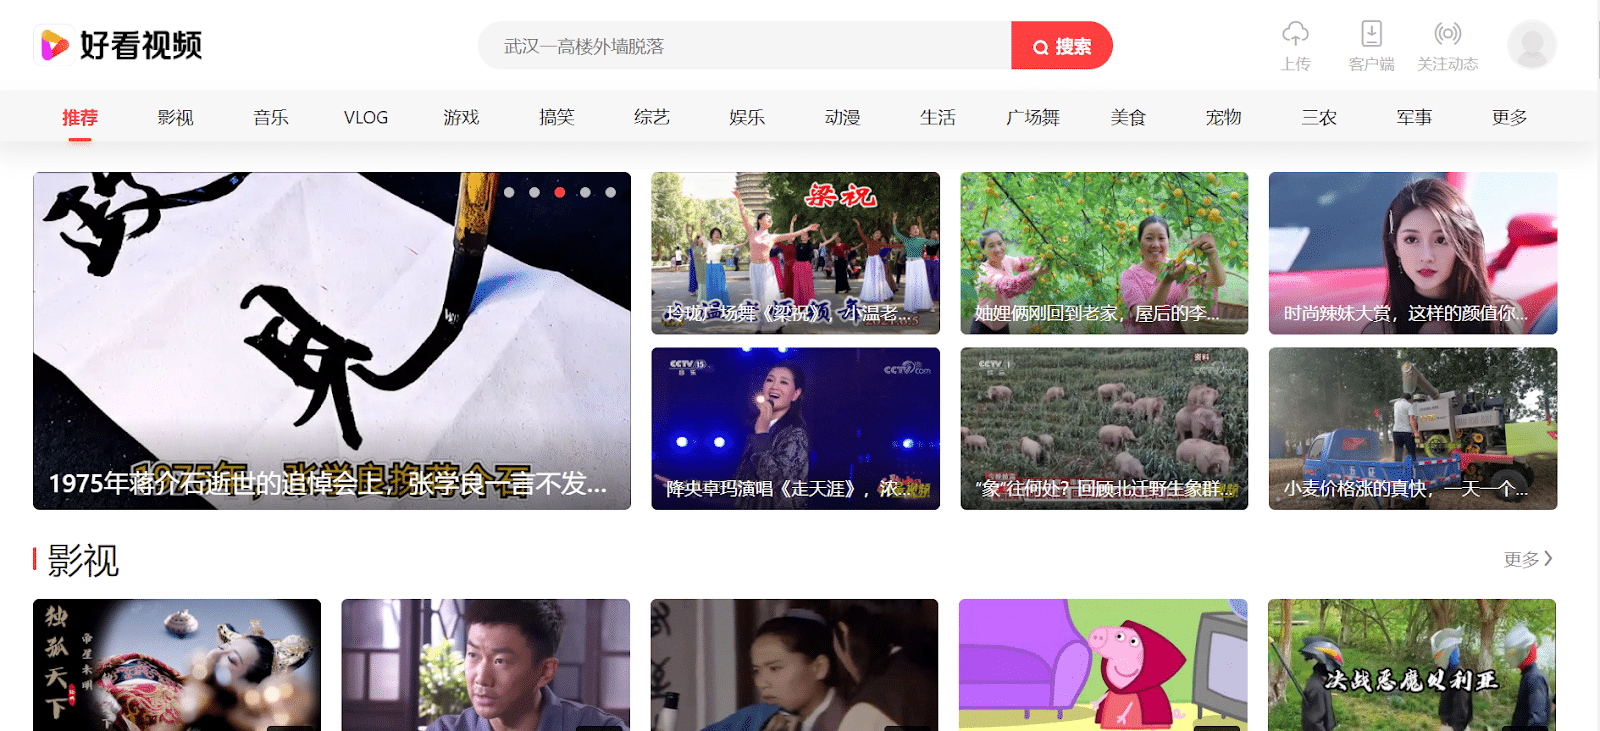 Baidu è il più grande motore di ricerca cinese